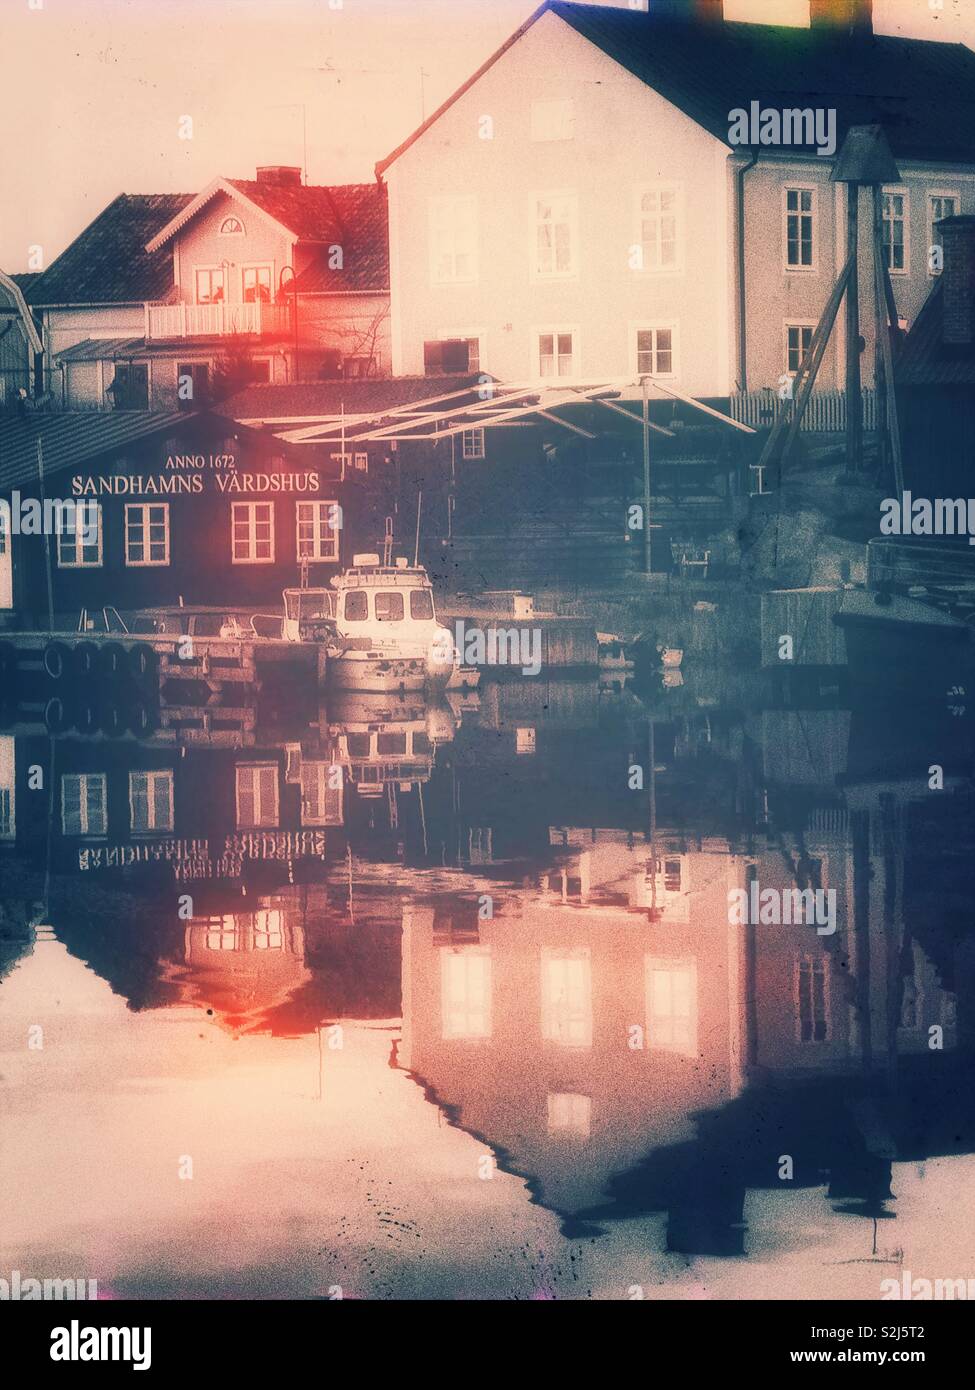 Hafen Sandhamn Dämmerung Reflexion, Stockholmer Schären, Schweden, Skandinavien. Insel in den äußeren Schären beliebt für Segeln und Yachting seit dem 19. Jahrhundert Stockfoto